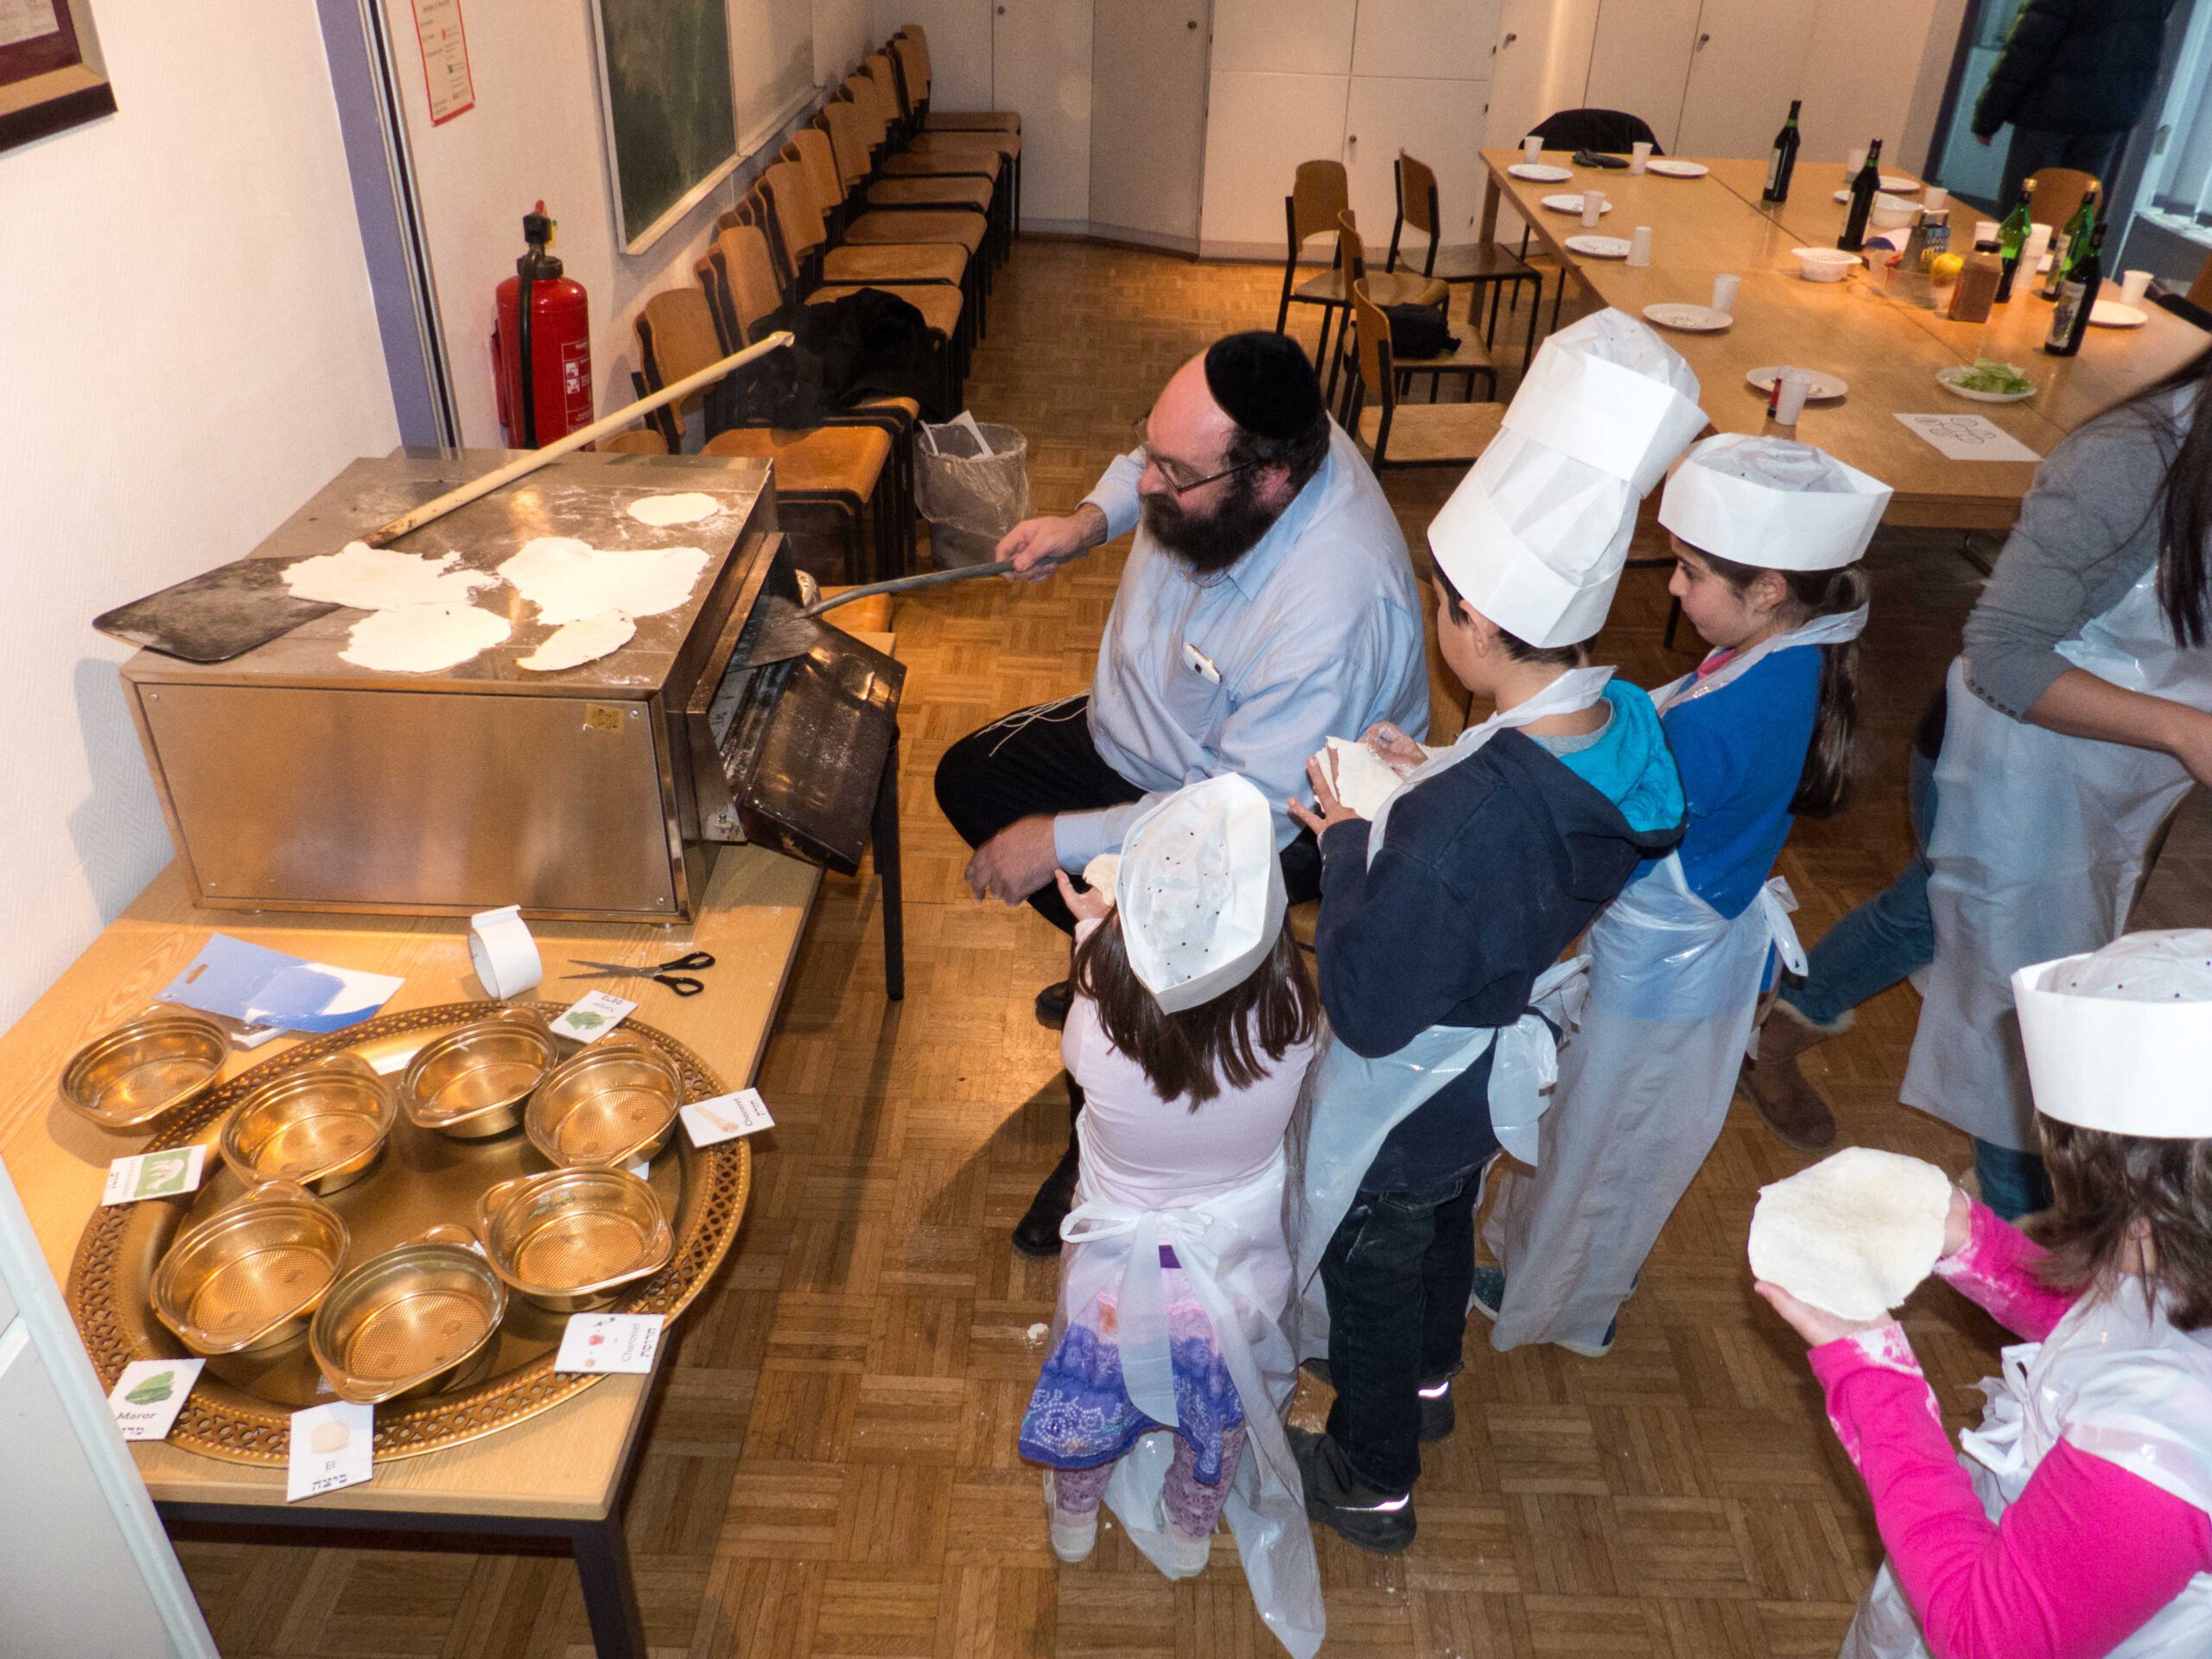 Cuisson de la matza pour Pessah au centre de jeunesse de la communauté juive de Wiesbaden. Photographe : Igor Eisenschtat. Collection de la communauté juive de Wiesbaden